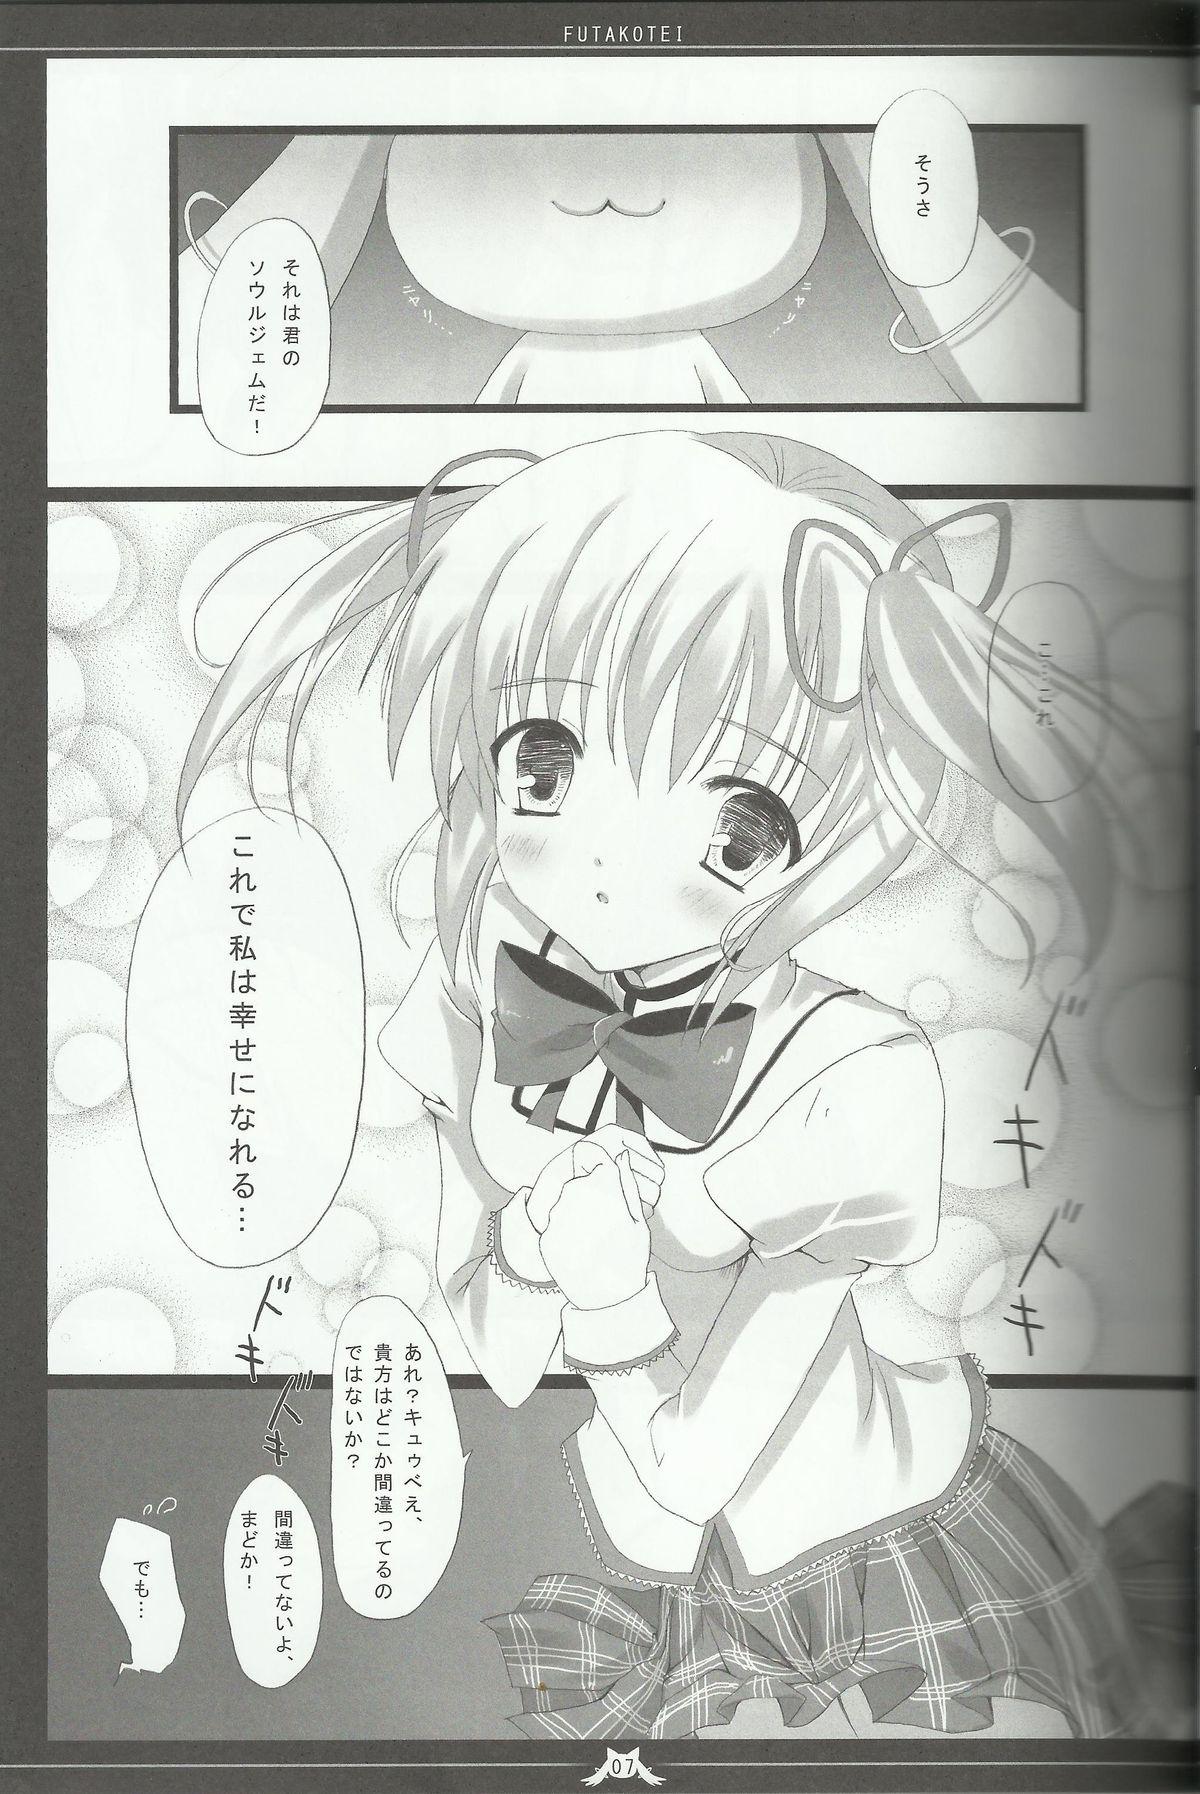 Blackmail Madoka no Shiawase na Ecchi Life - Puella magi madoka magica Toilet - Page 5